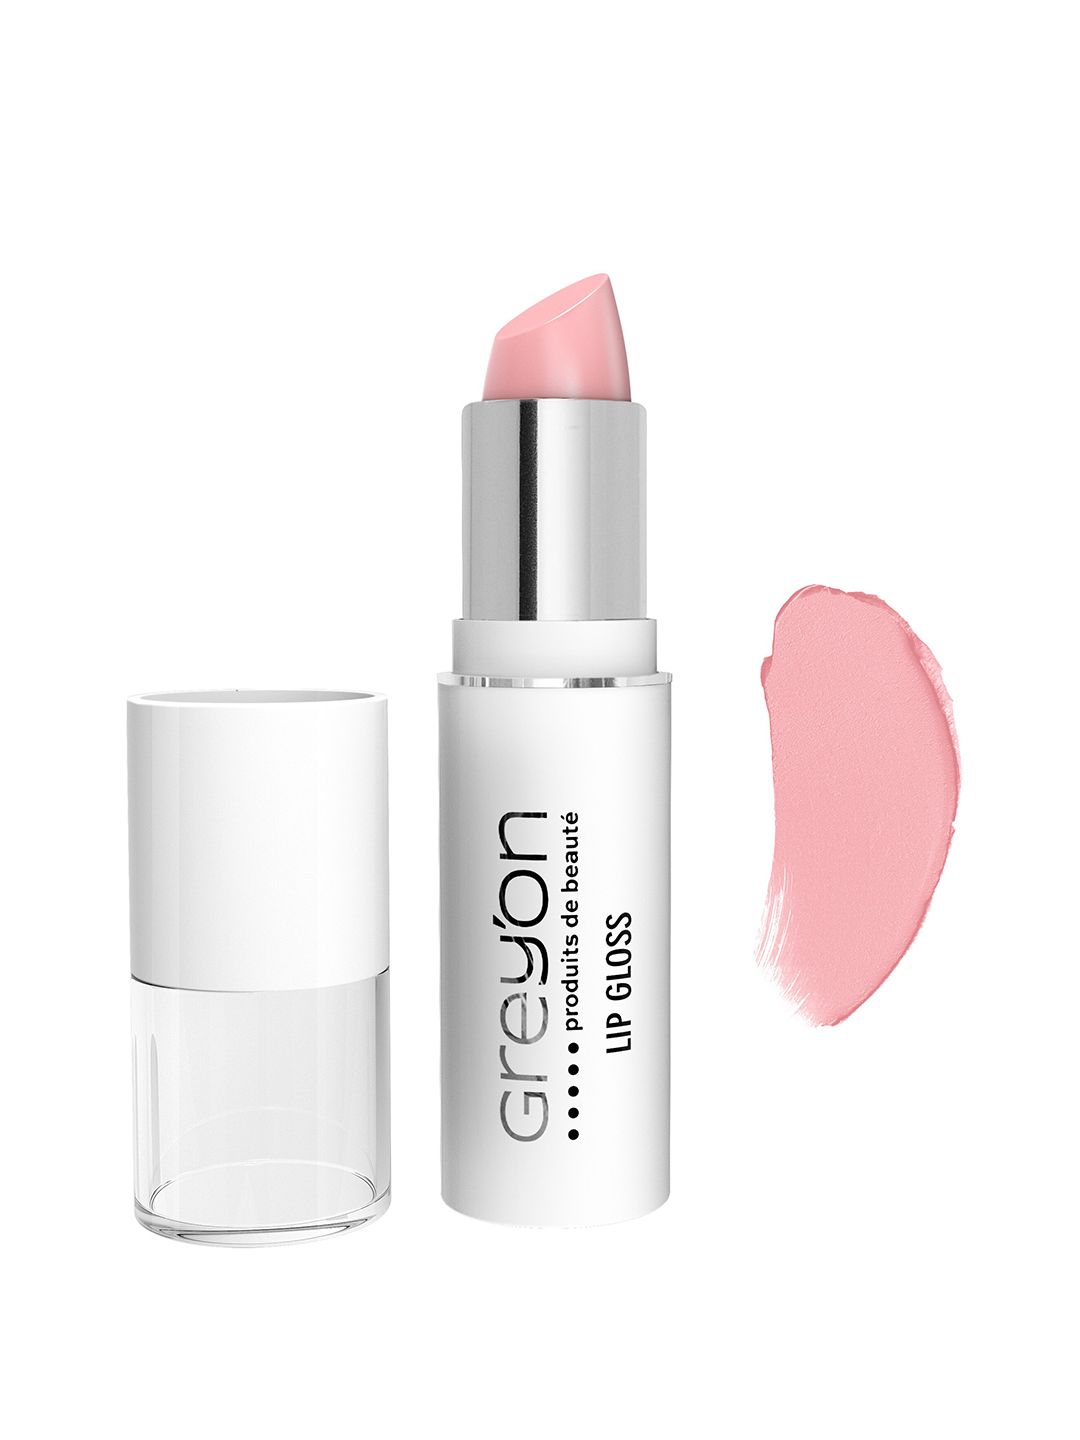 Greyon Lip Gloss Stick Pastel Pink 72 Price in India